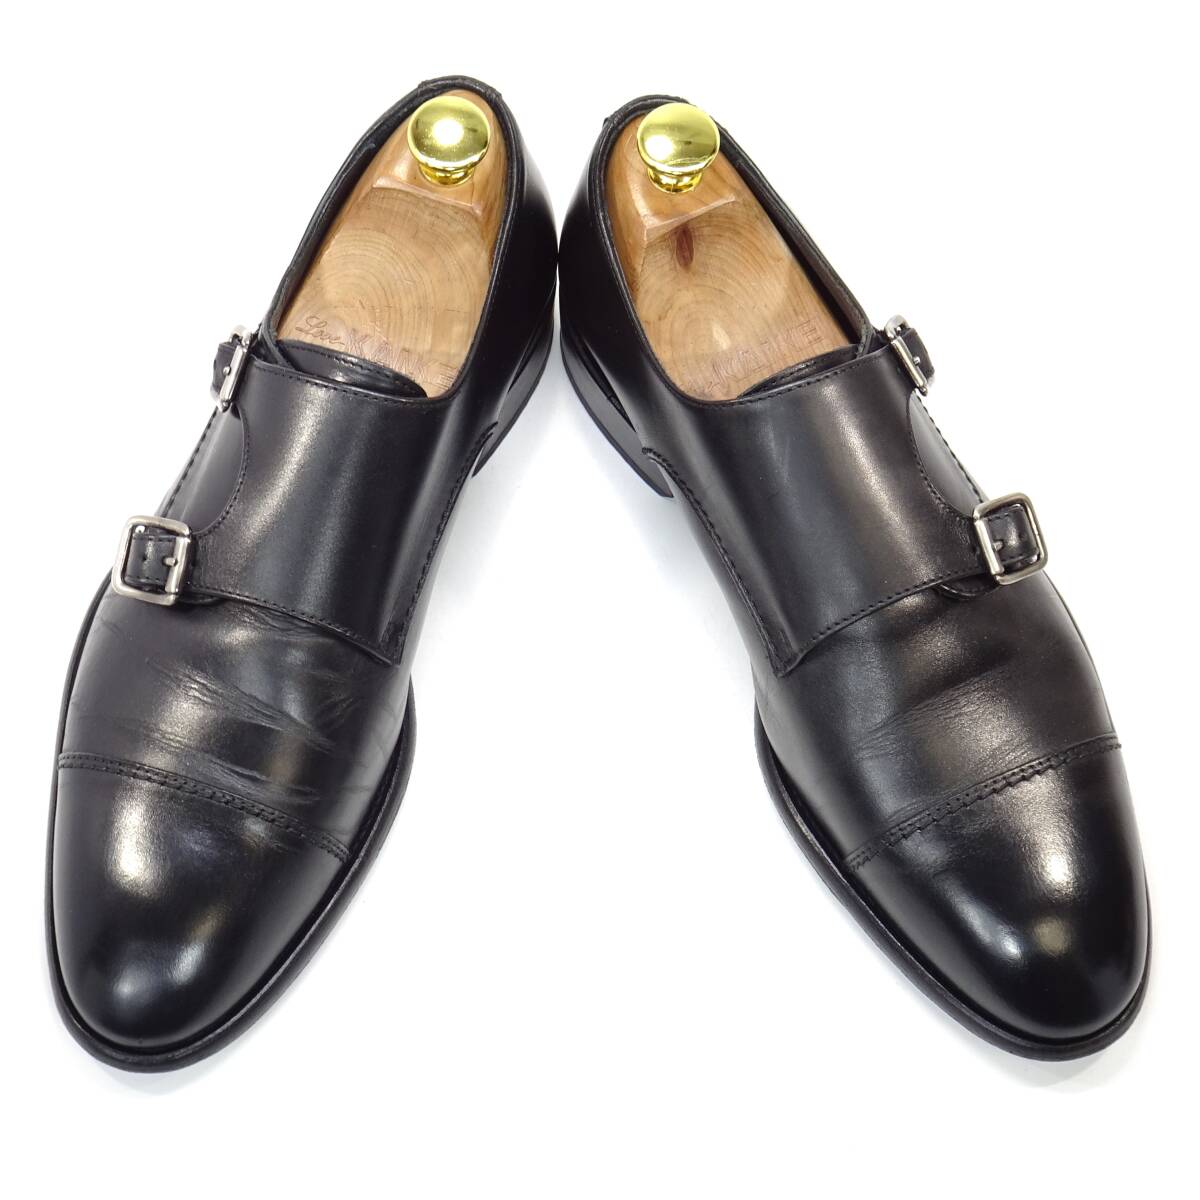 即決 イタリア製 HILTON 40 ダブルモンクストラップ ヒルトン メンズ 黒 ブラック 本革 ビジネス 本皮 ドレスシューズ 革靴 通勤 紳士靴_画像1